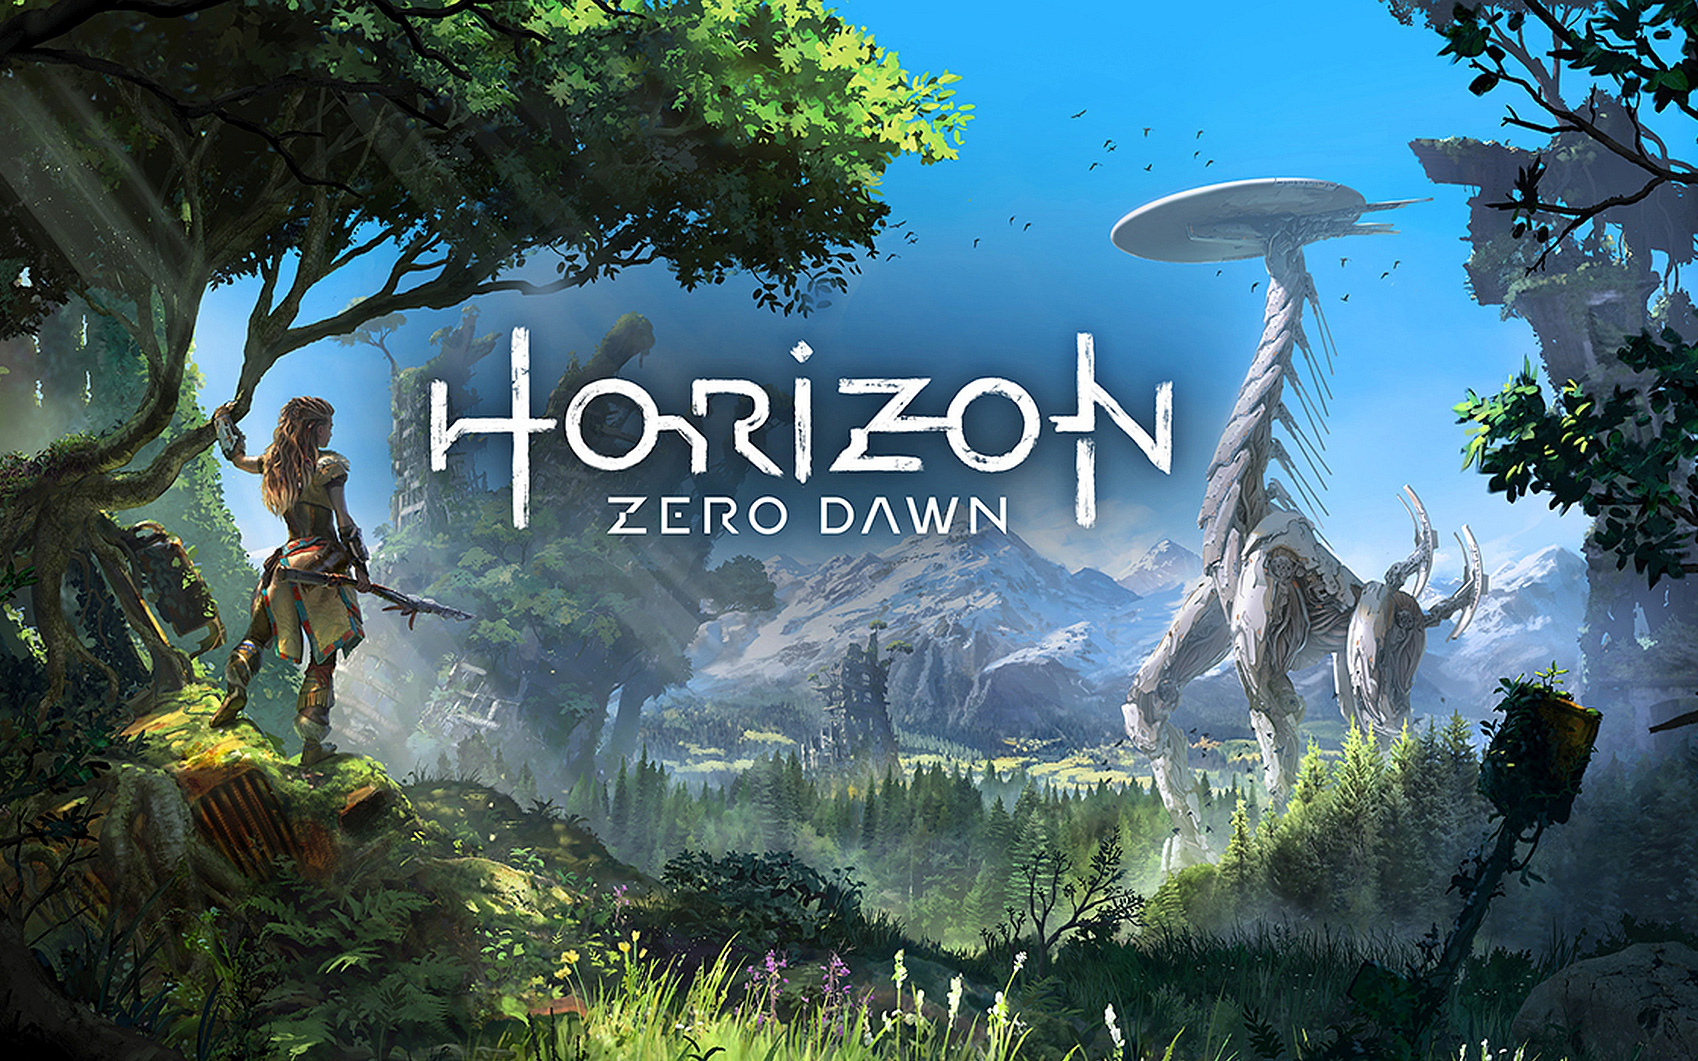 Giá game Horizon Zero Dawn tăng gần 400%: Đòn trừng phạt dành cho người chơi lợi dụng VPN để chuyển vùng và mua game rẻ trên Steam